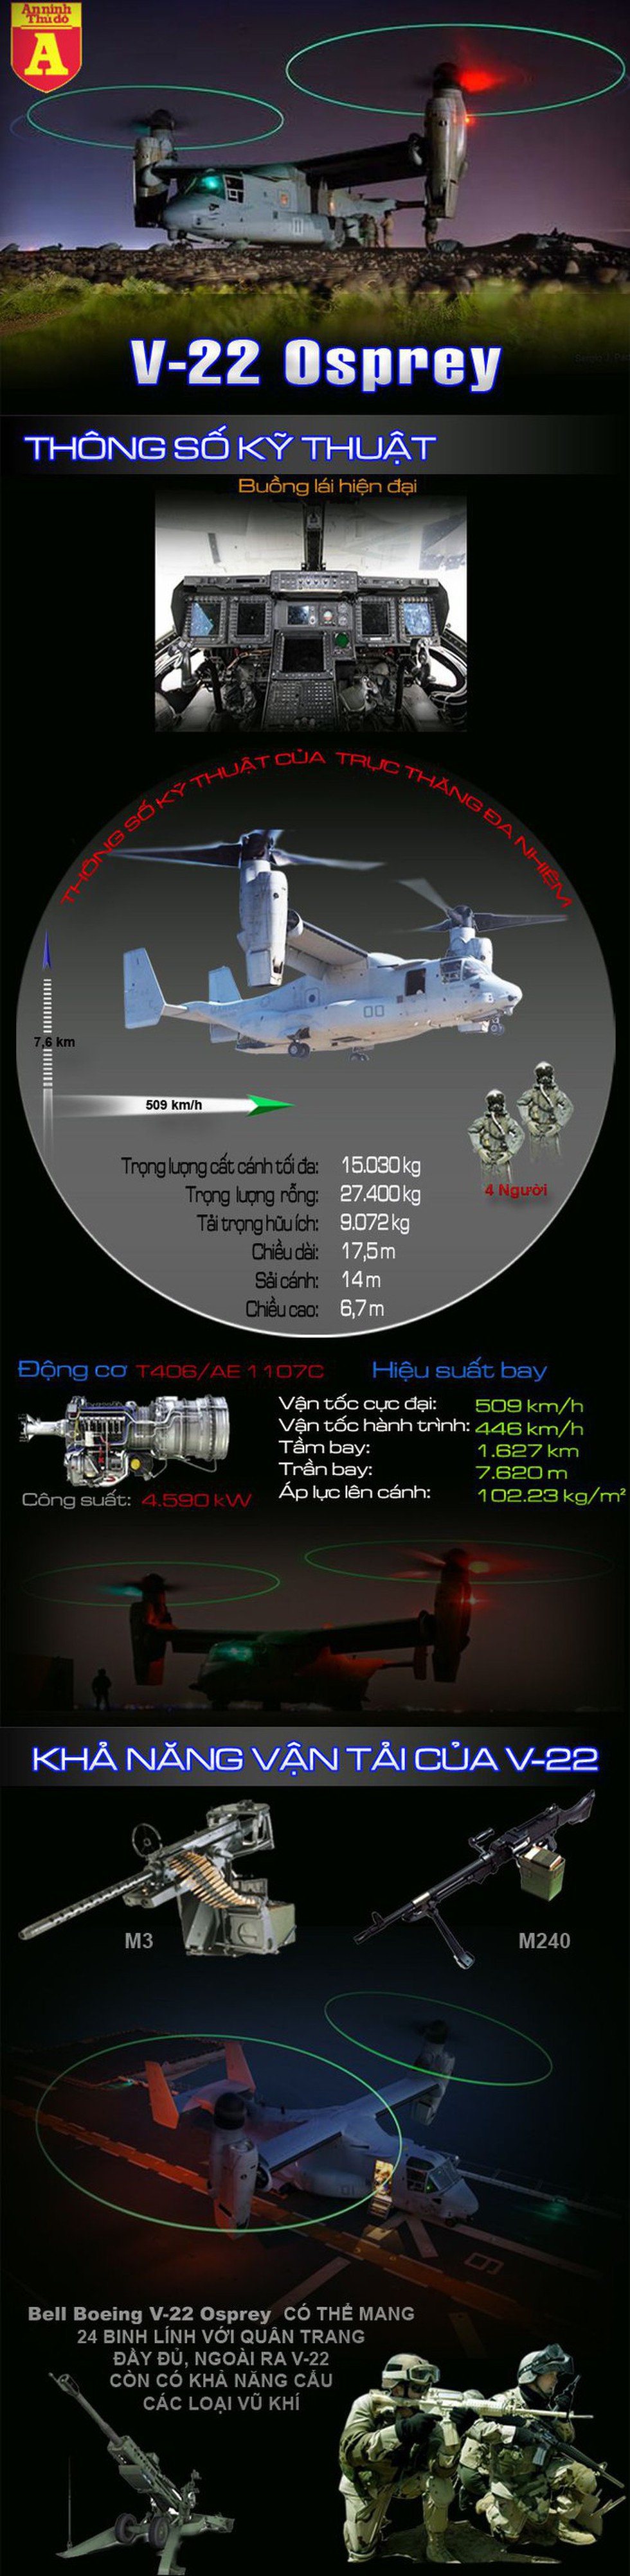 [Infographics] "Chim ưng biển" siêu dị V-22 sẽ giúp Nhật Bản chiếm ưu thế trong tác chiến biển đảo - Ảnh 1